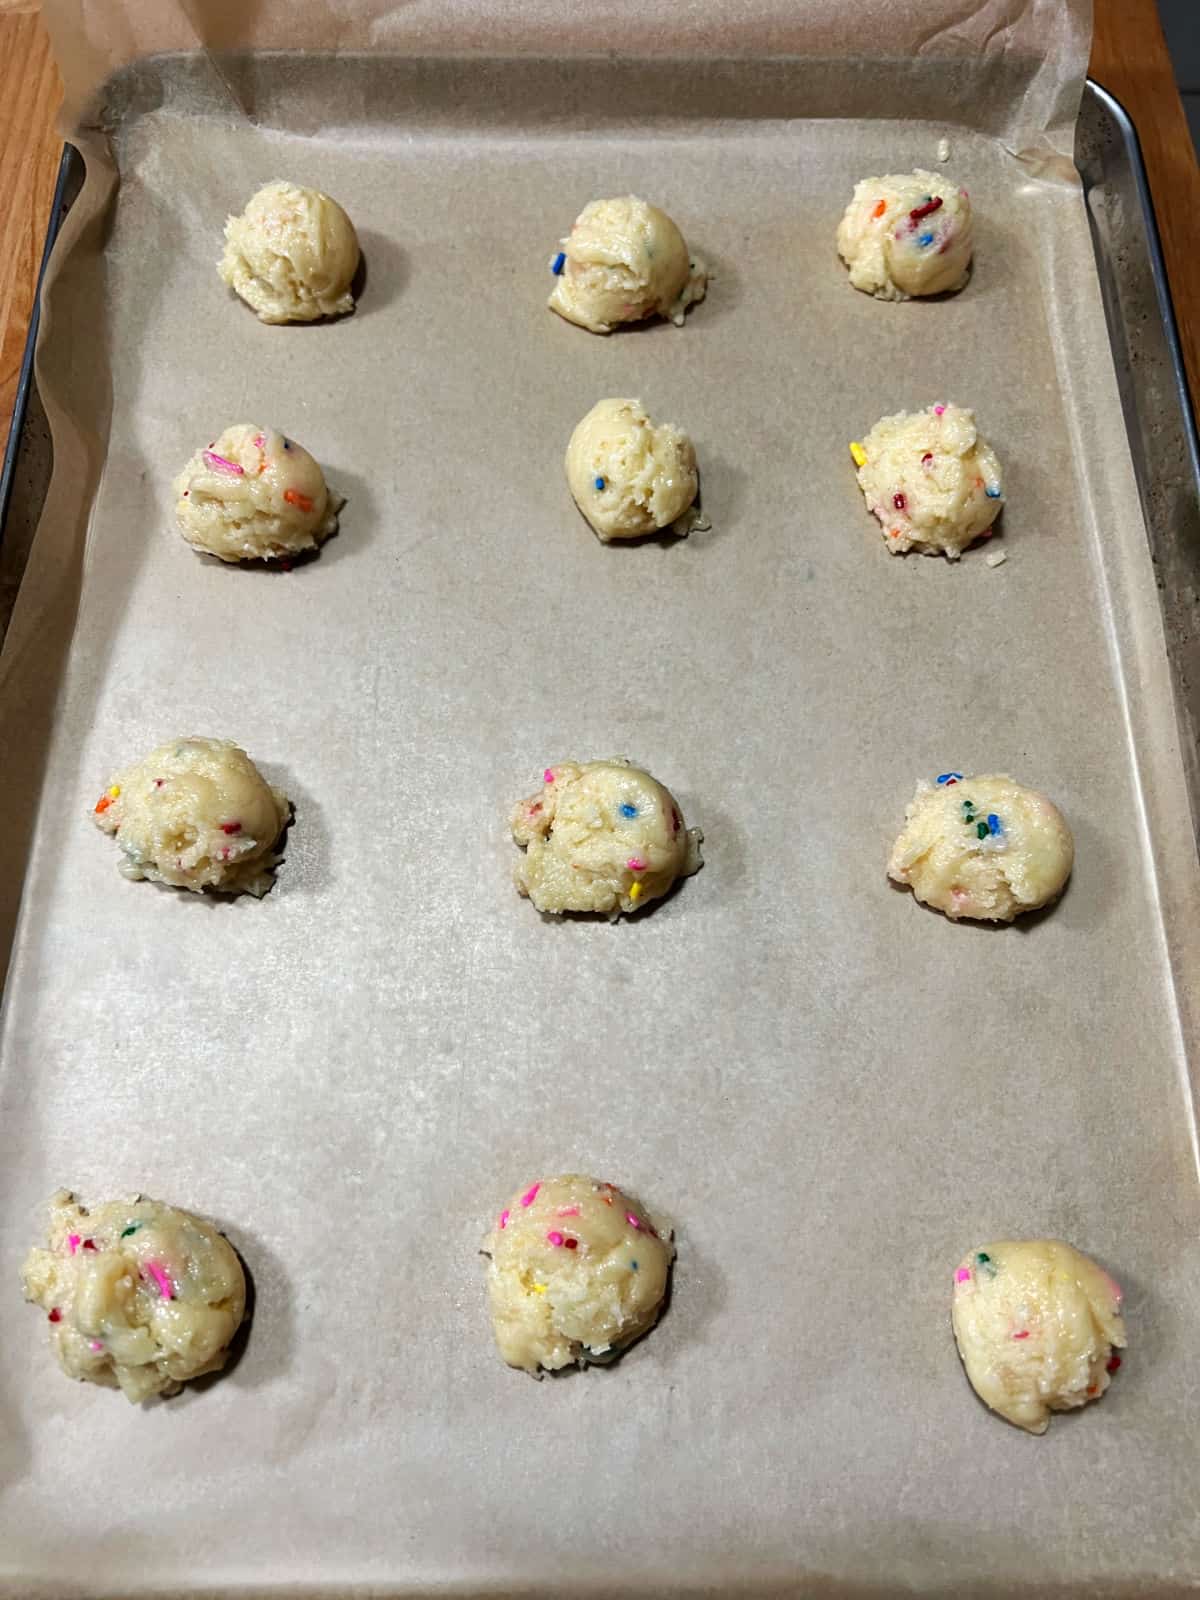 Balls of dough spaced apart on baking sheet.